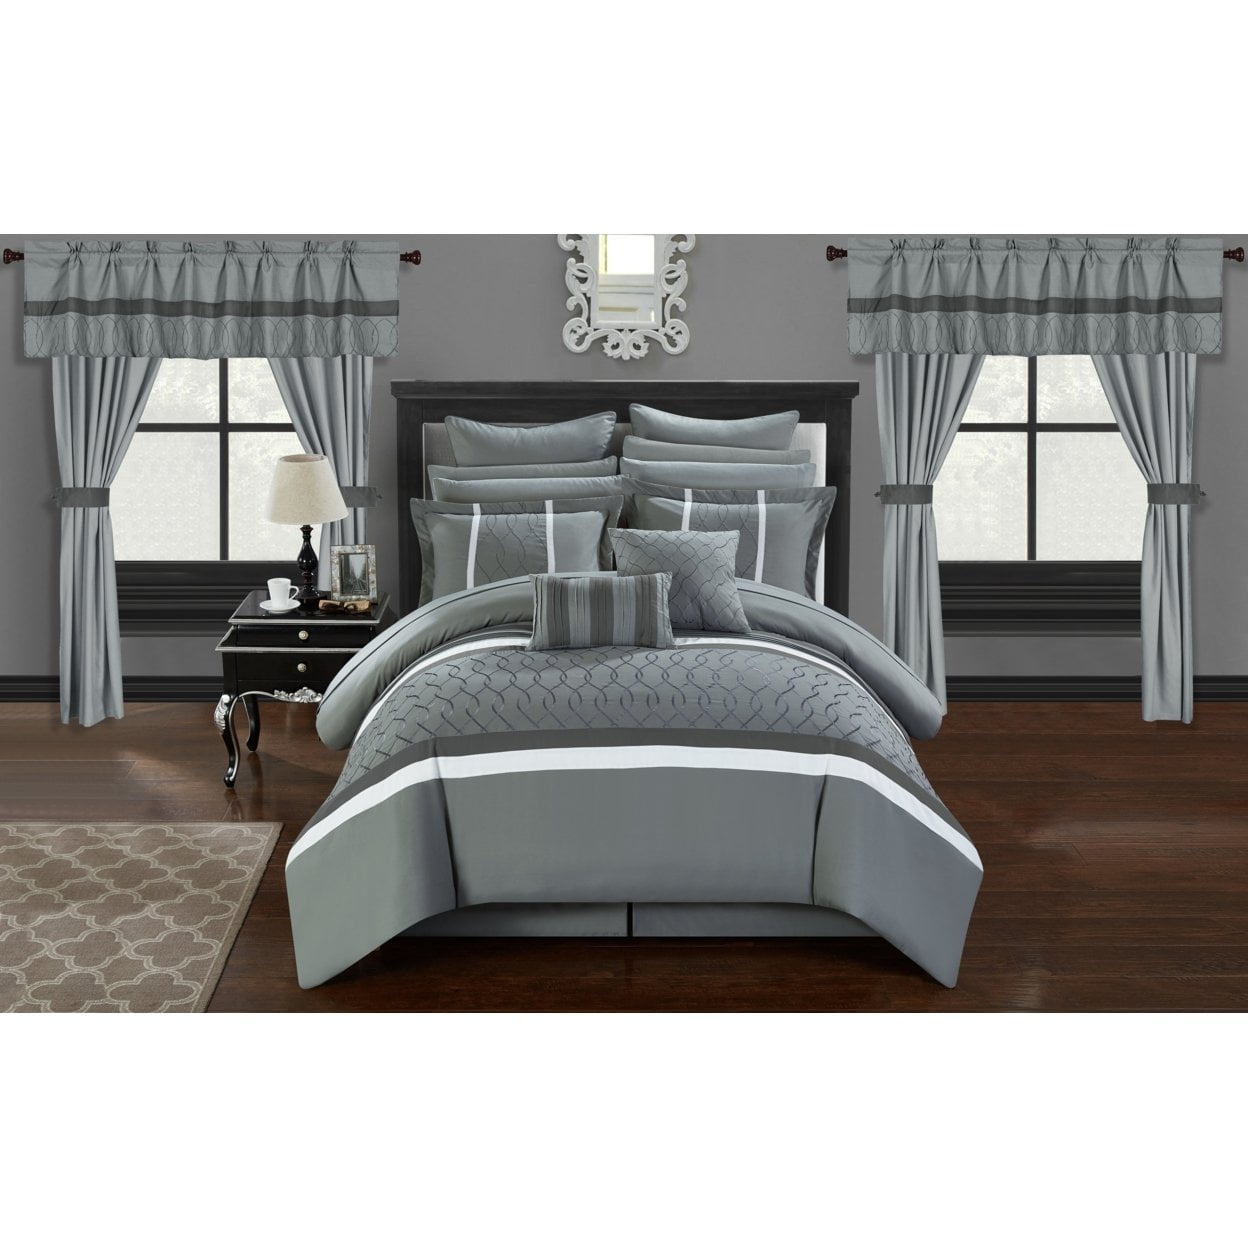 Picture of Luxury Bedding CS2885 Dinah Grey Comforter Set, Queen